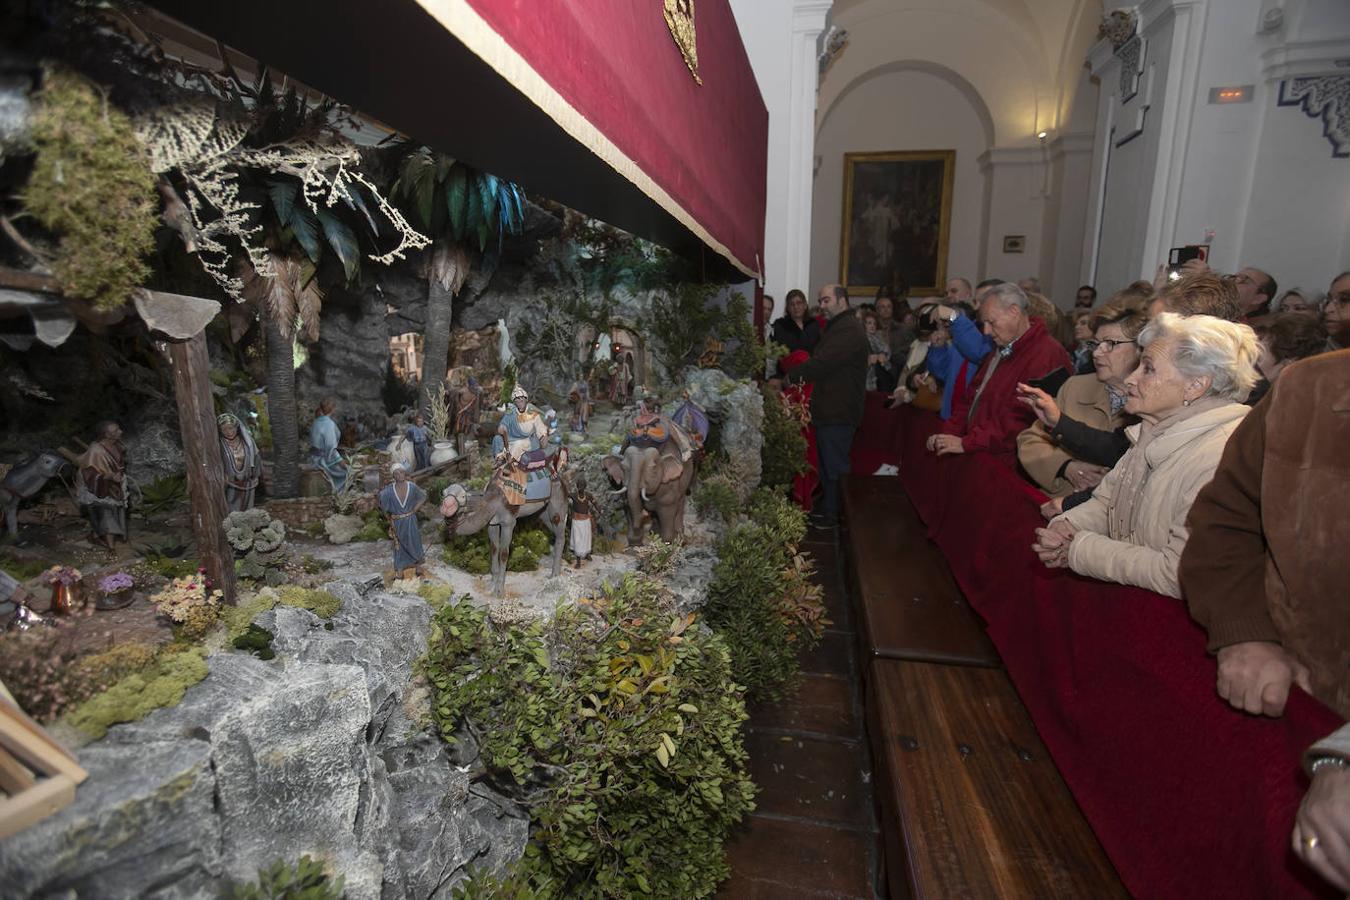 La inauguración del Belén de la Diputación de Córdoba, en imágenes